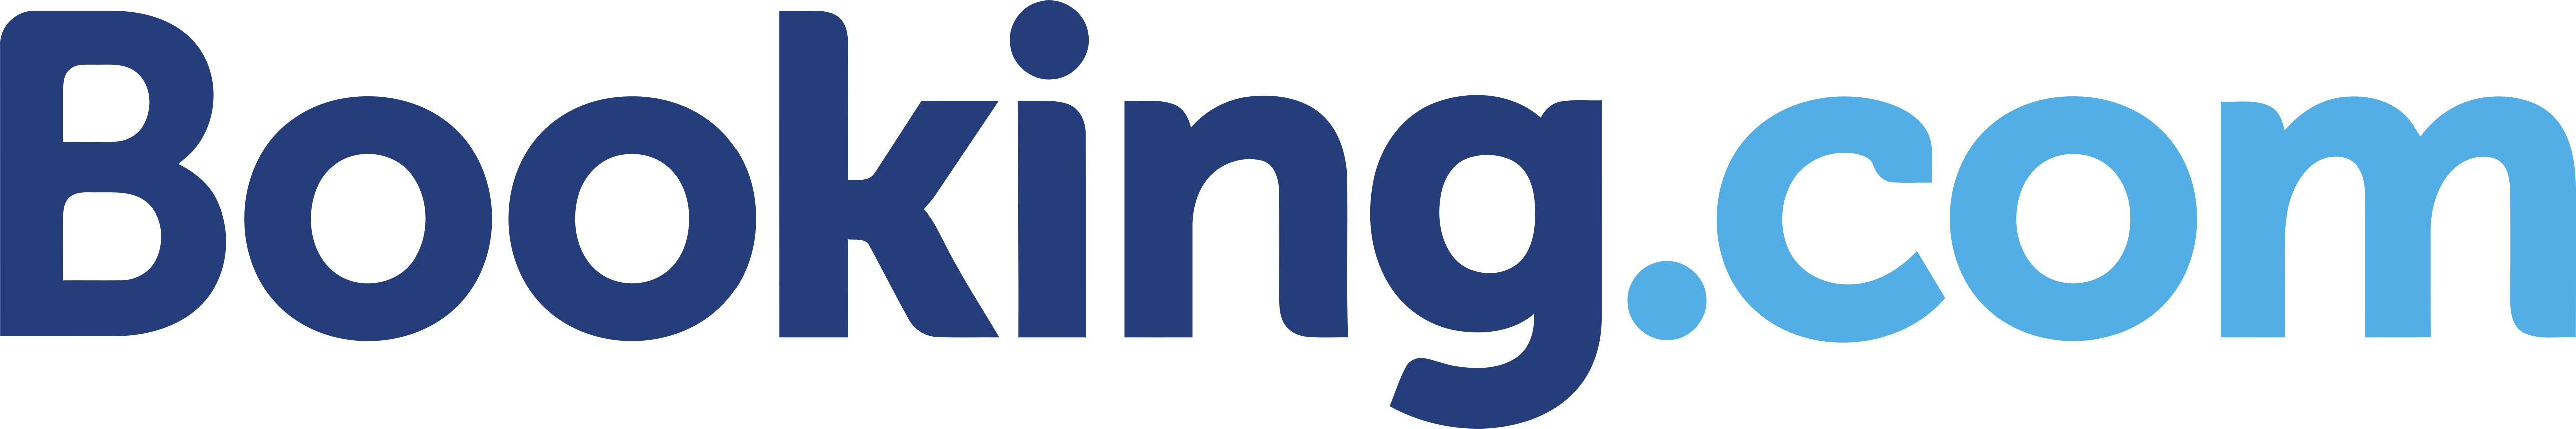 Booking-logo